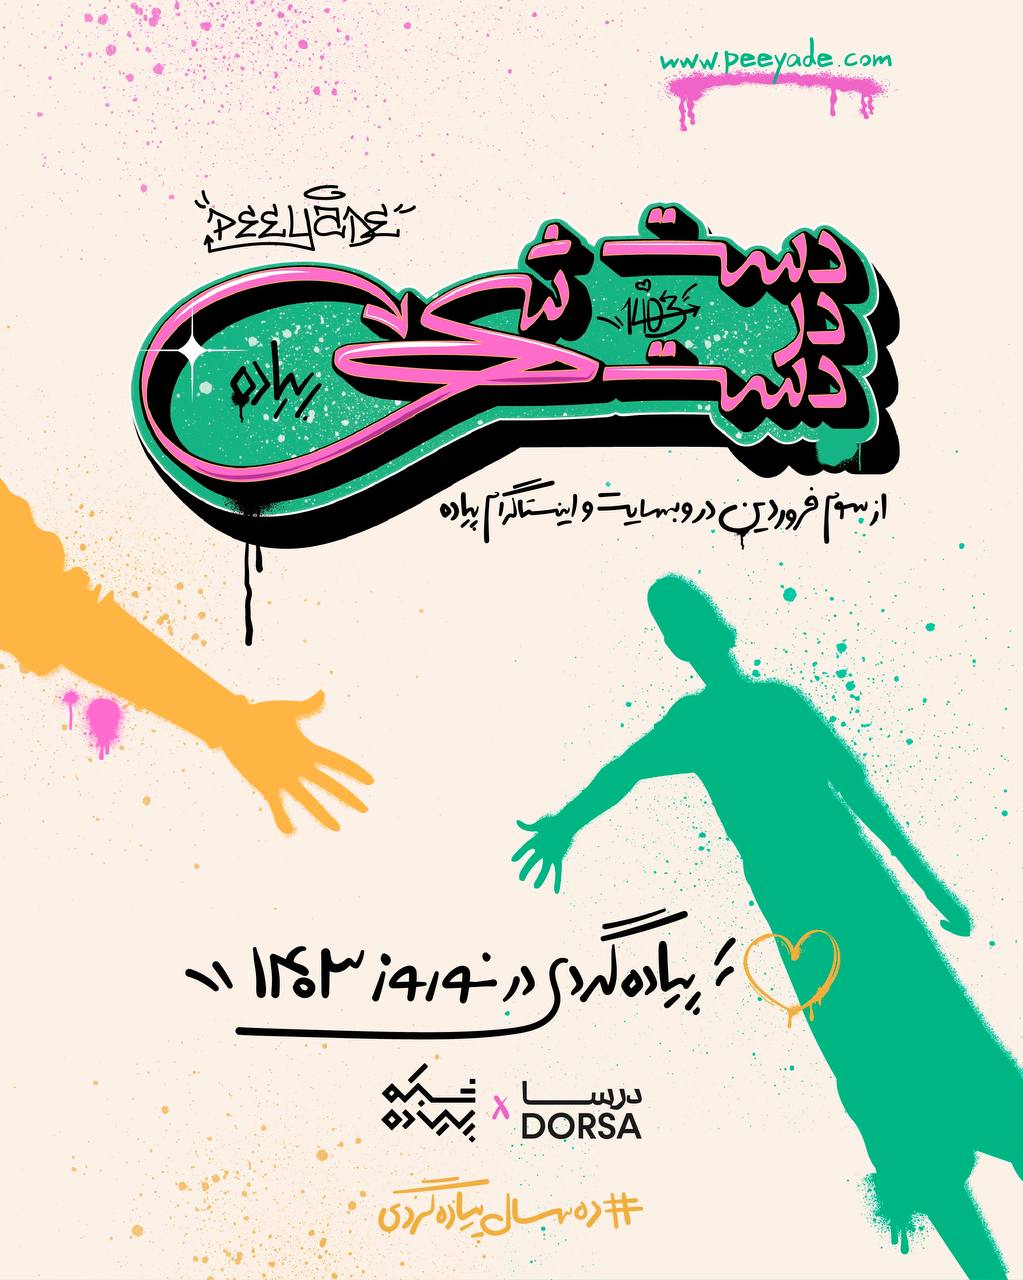 کمپین نوروزی «بزم دال» درسا، با نمادهای نوستالژیک در شهر تهران 64